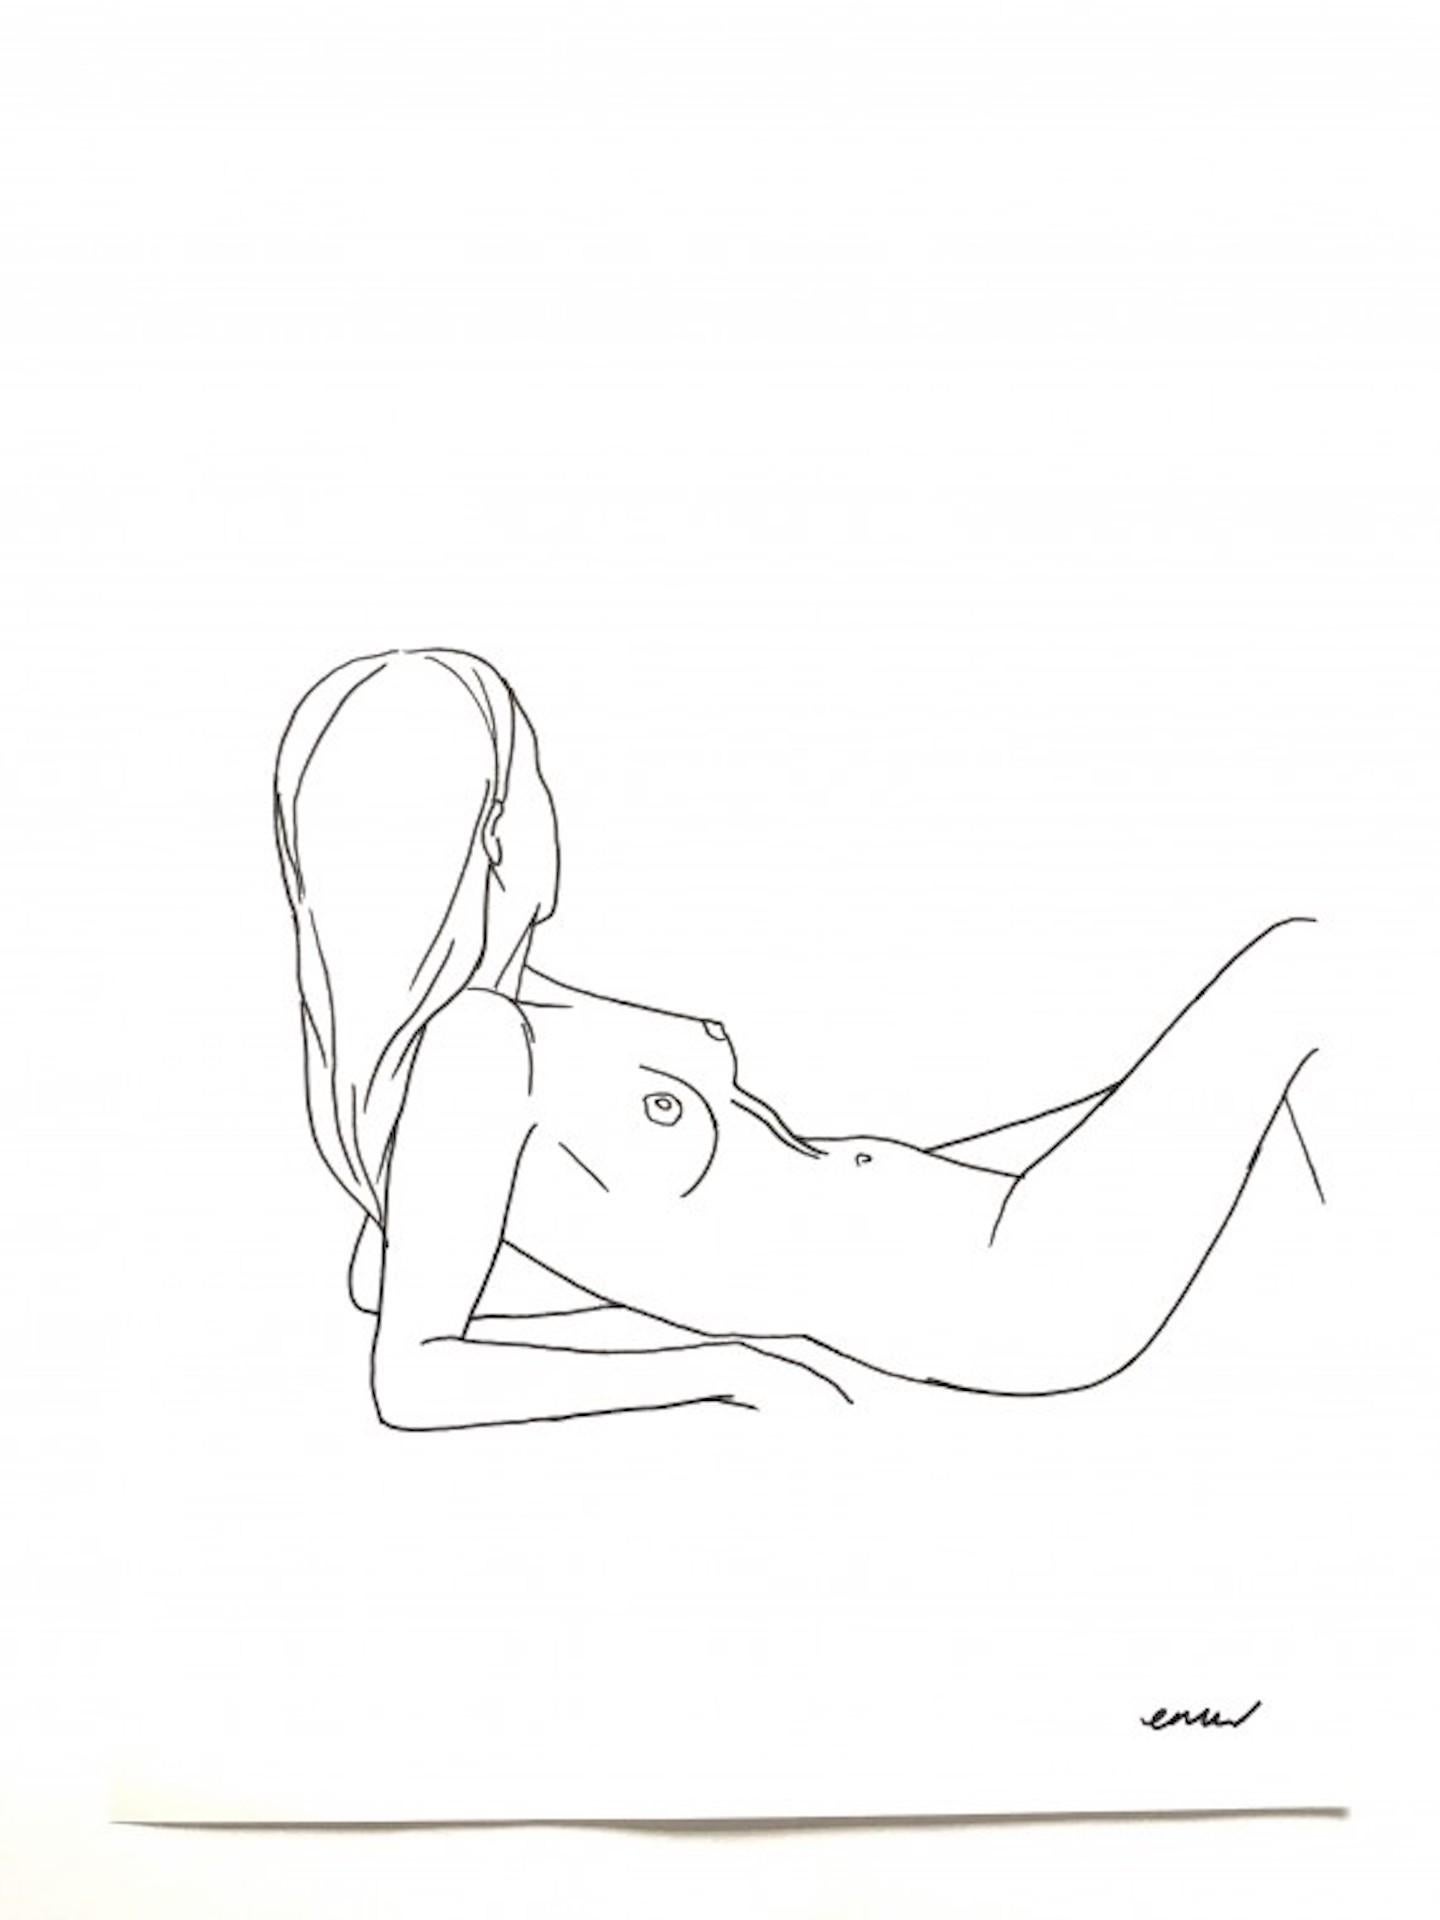 Nude 9, Ellen Williams, Original Drawing, Figurative Nude Portraiture, Pen Art